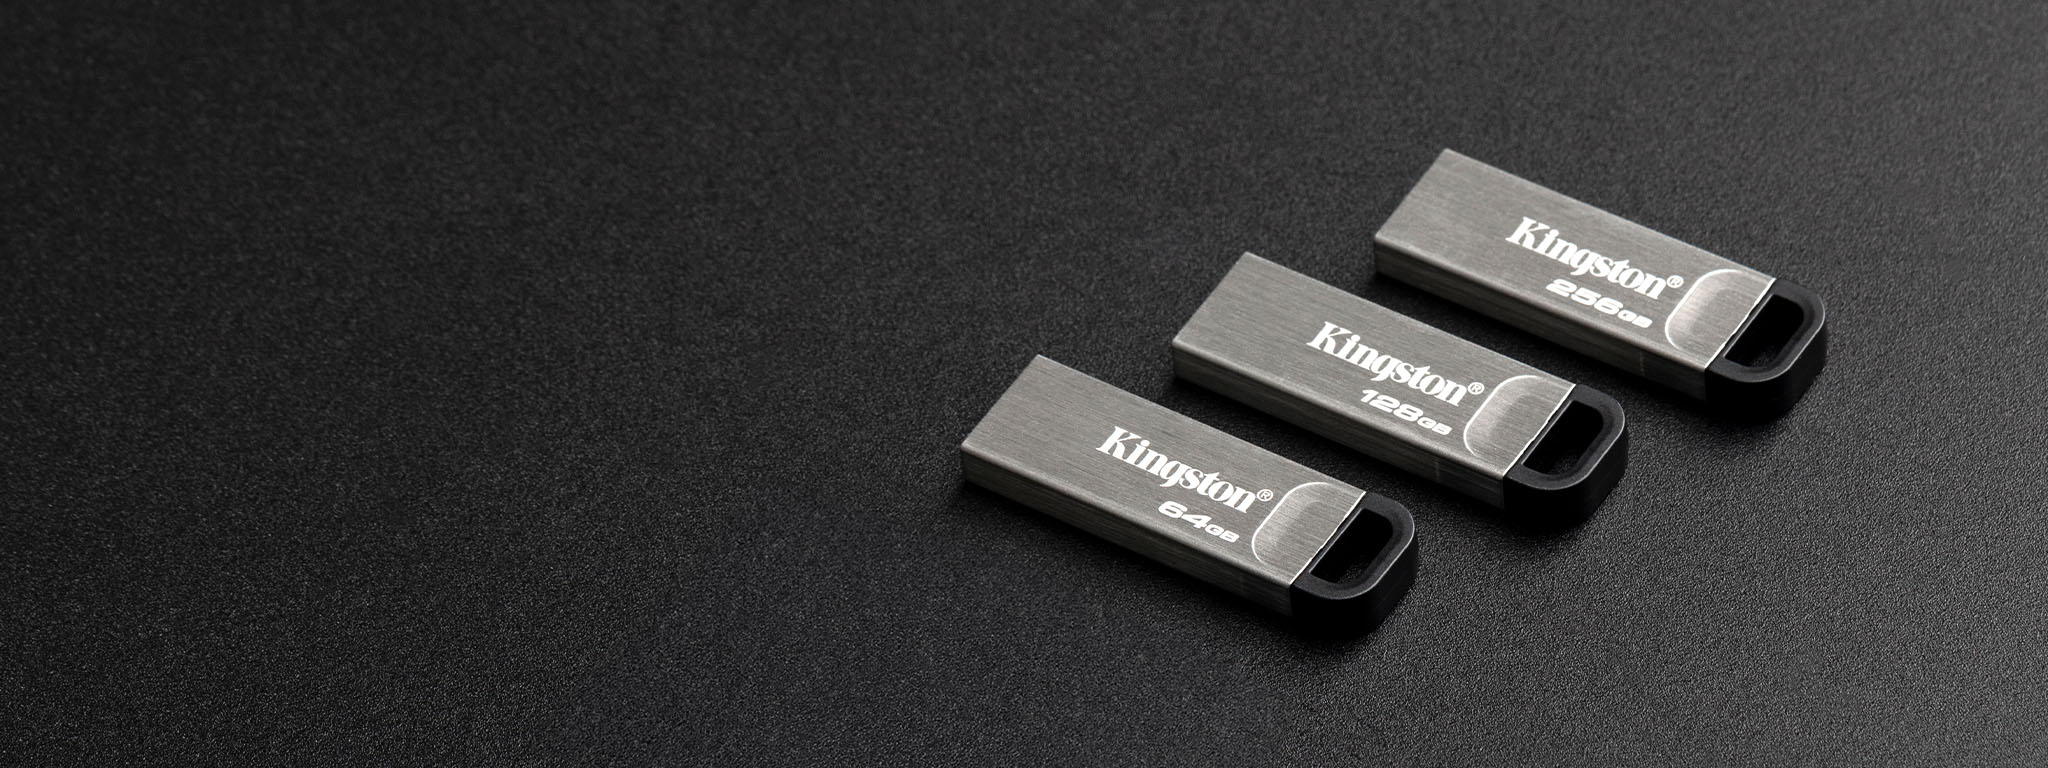 Widok z góry na cztery pamięci flash USB DT Kyson o różnych pojemnościach leżące na czarnej powierzchni